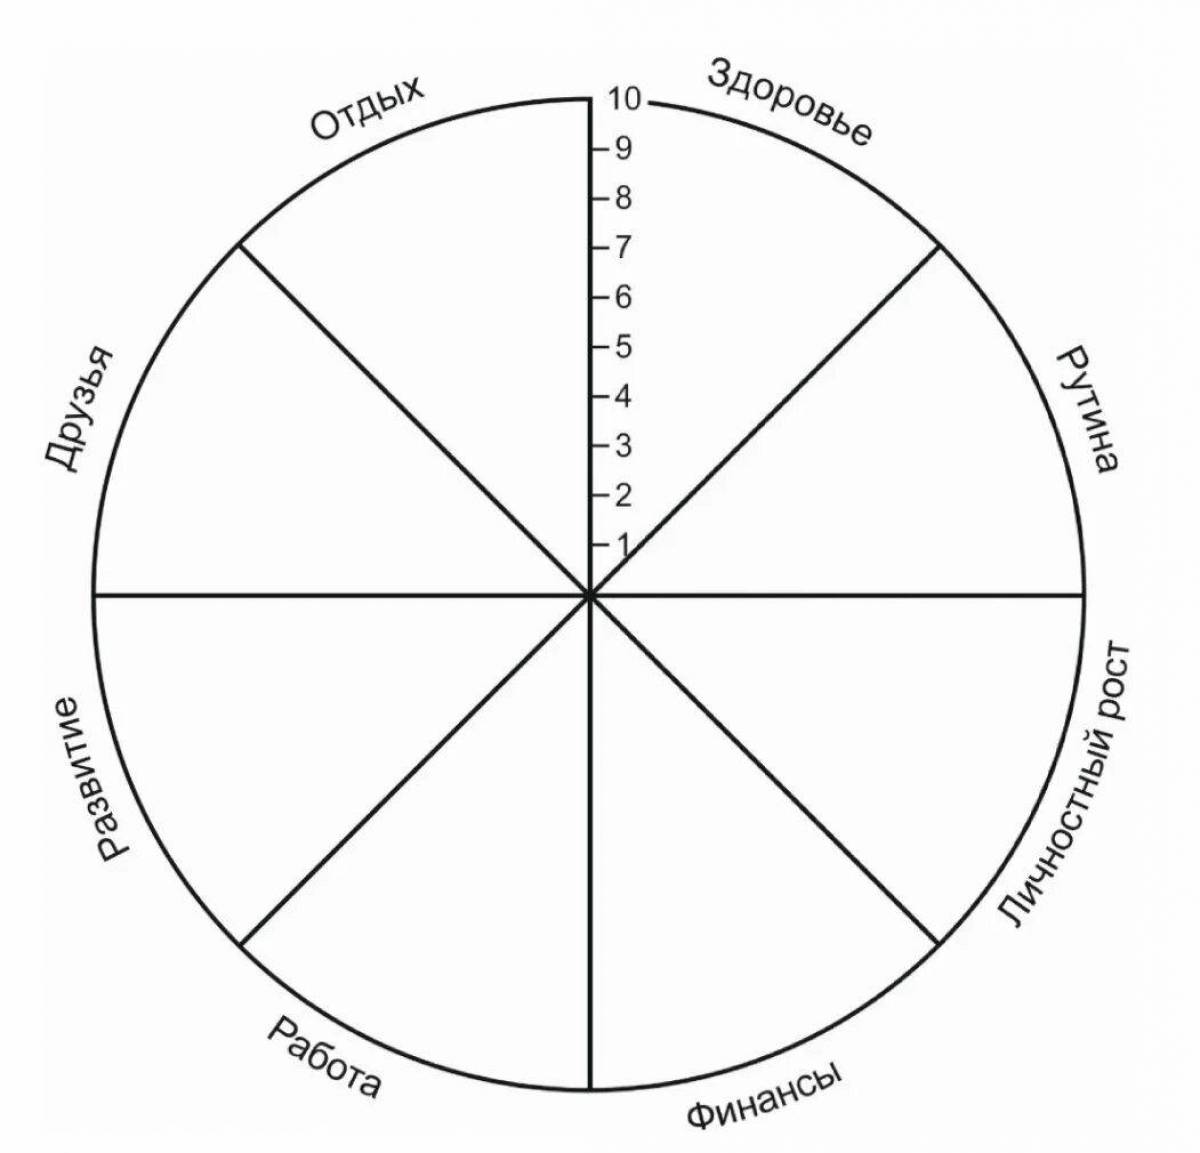 Колесо круг или окружность. Колесо жизненного баланса 8 сфер. Схема колеса жизненного баланса. Коле/о жизненного баланса. Колесо жизни, баланс жизни (8 основных сфер).